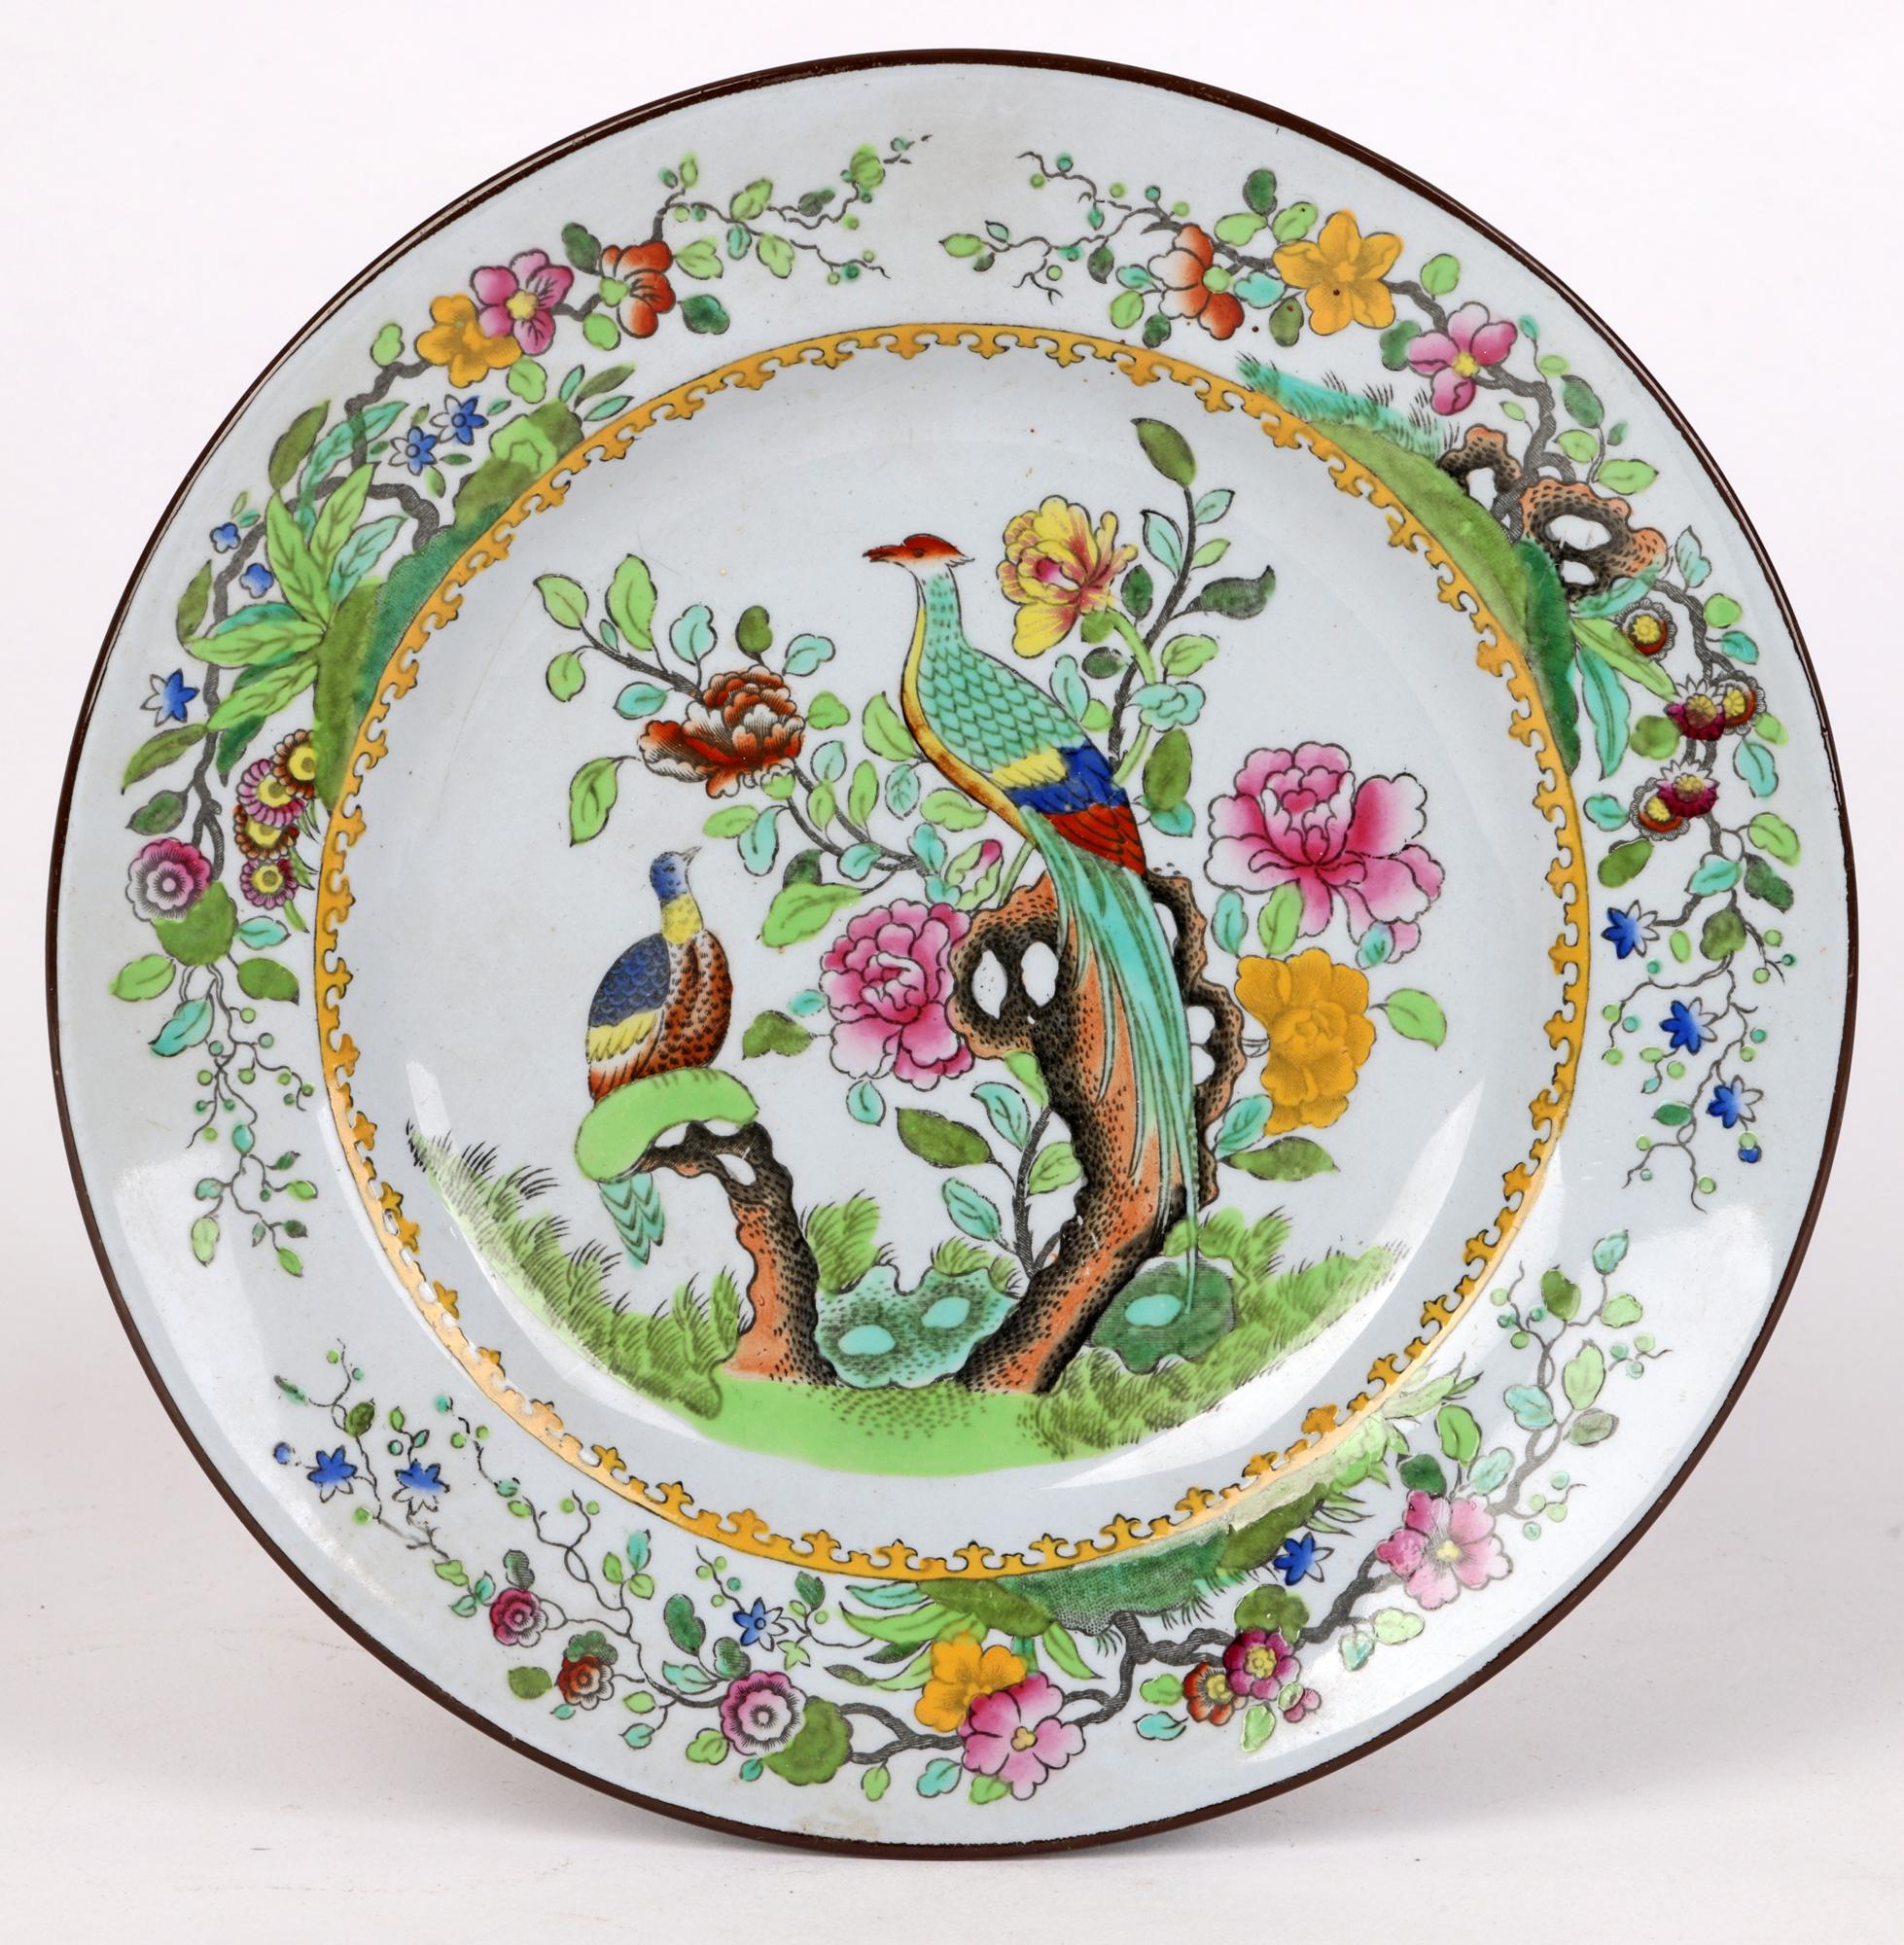 Assiette d'office en porcelaine anglaise Spode de bonne qualité, décorée d'un paysage chinois de deux oiseaux exotiques perchés sur un prunus en fleurs, datée de 1914. Cette assiette de petite taille, probablement une assiette d'appoint, est